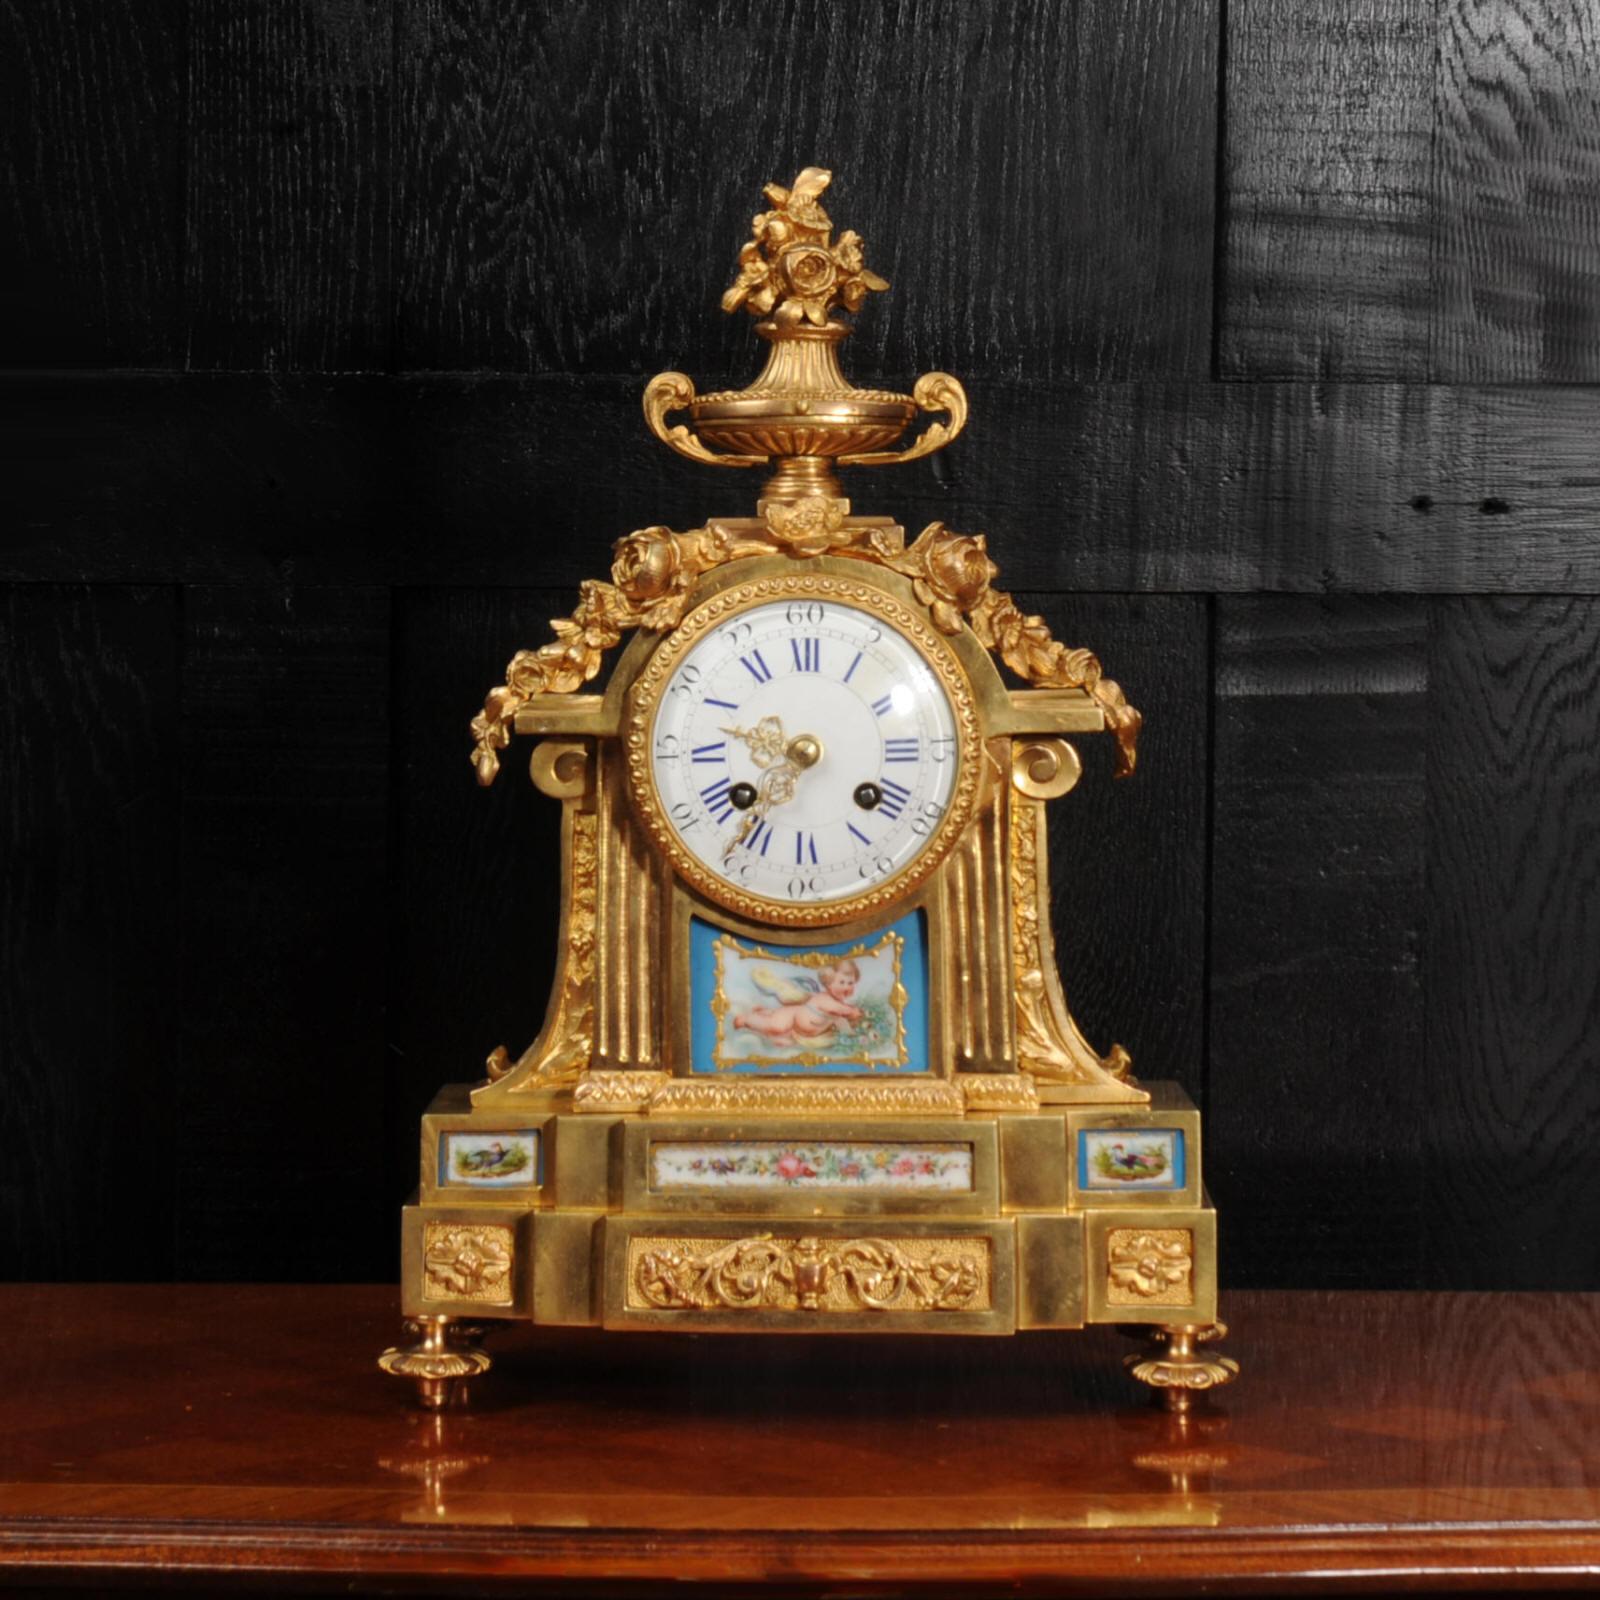 Une belle horloge française ancienne en bronze doré par Louis Japy, membre de la grande dynastie d'horlogers Japy. De style Louis XVI, il est monté avec des panneaux en porcelaine de style Sèvres. La porcelaine présente un fond bleu céleste avec des